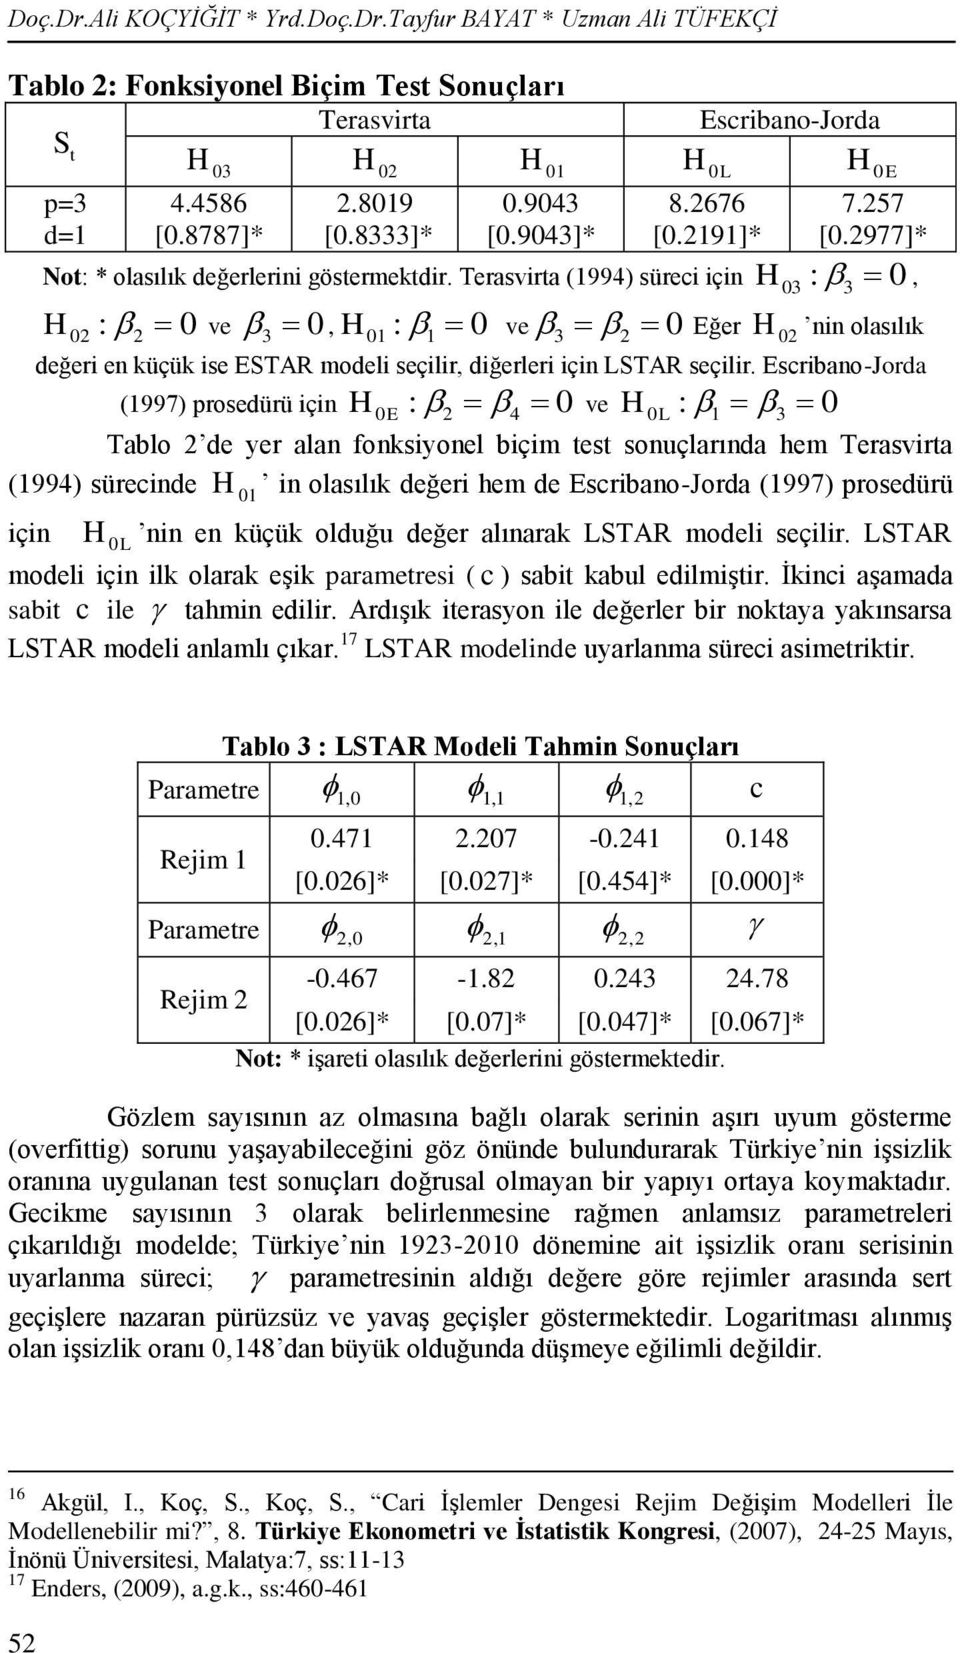 2977]* : 0 H, nin olasılık değeri en küçük ise ESTAR modeli seçilir, diğerleri için LSTAR seçilir.